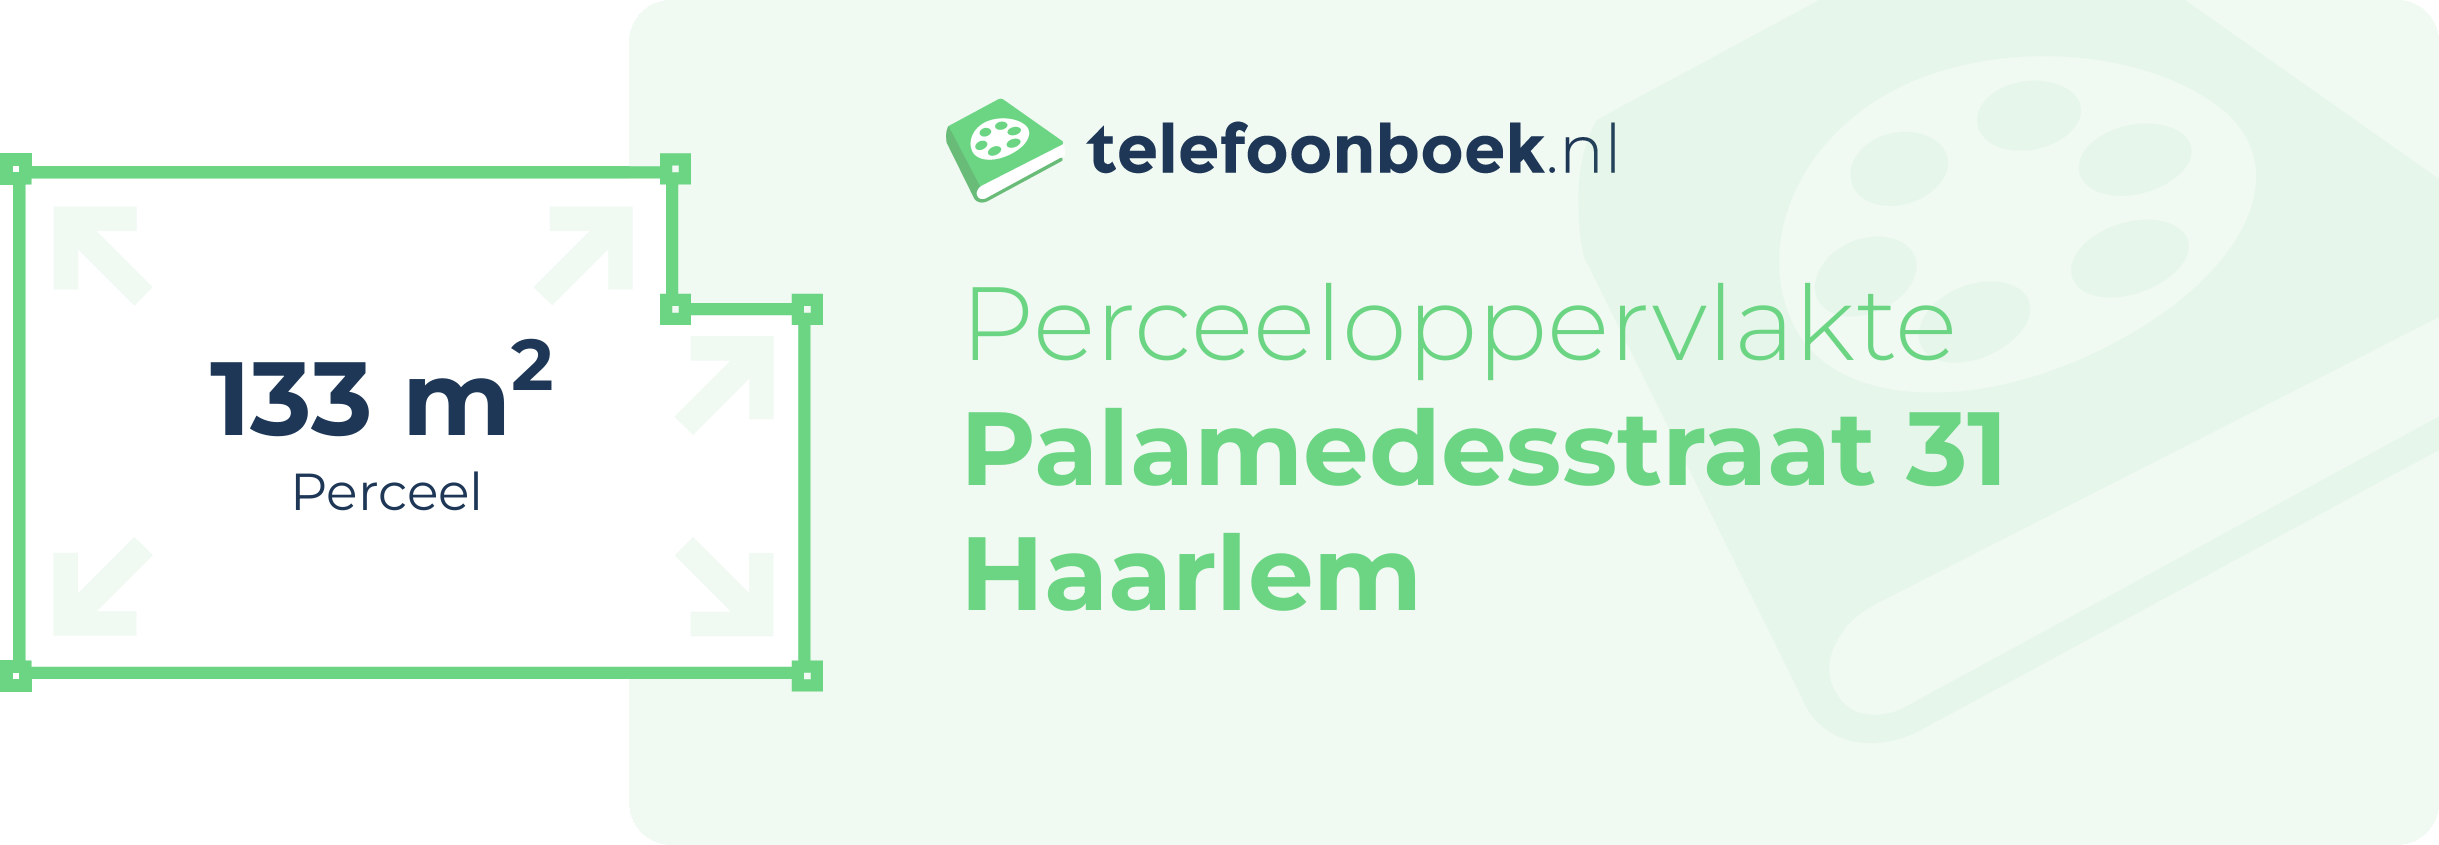 Perceeloppervlakte Palamedesstraat 31 Haarlem